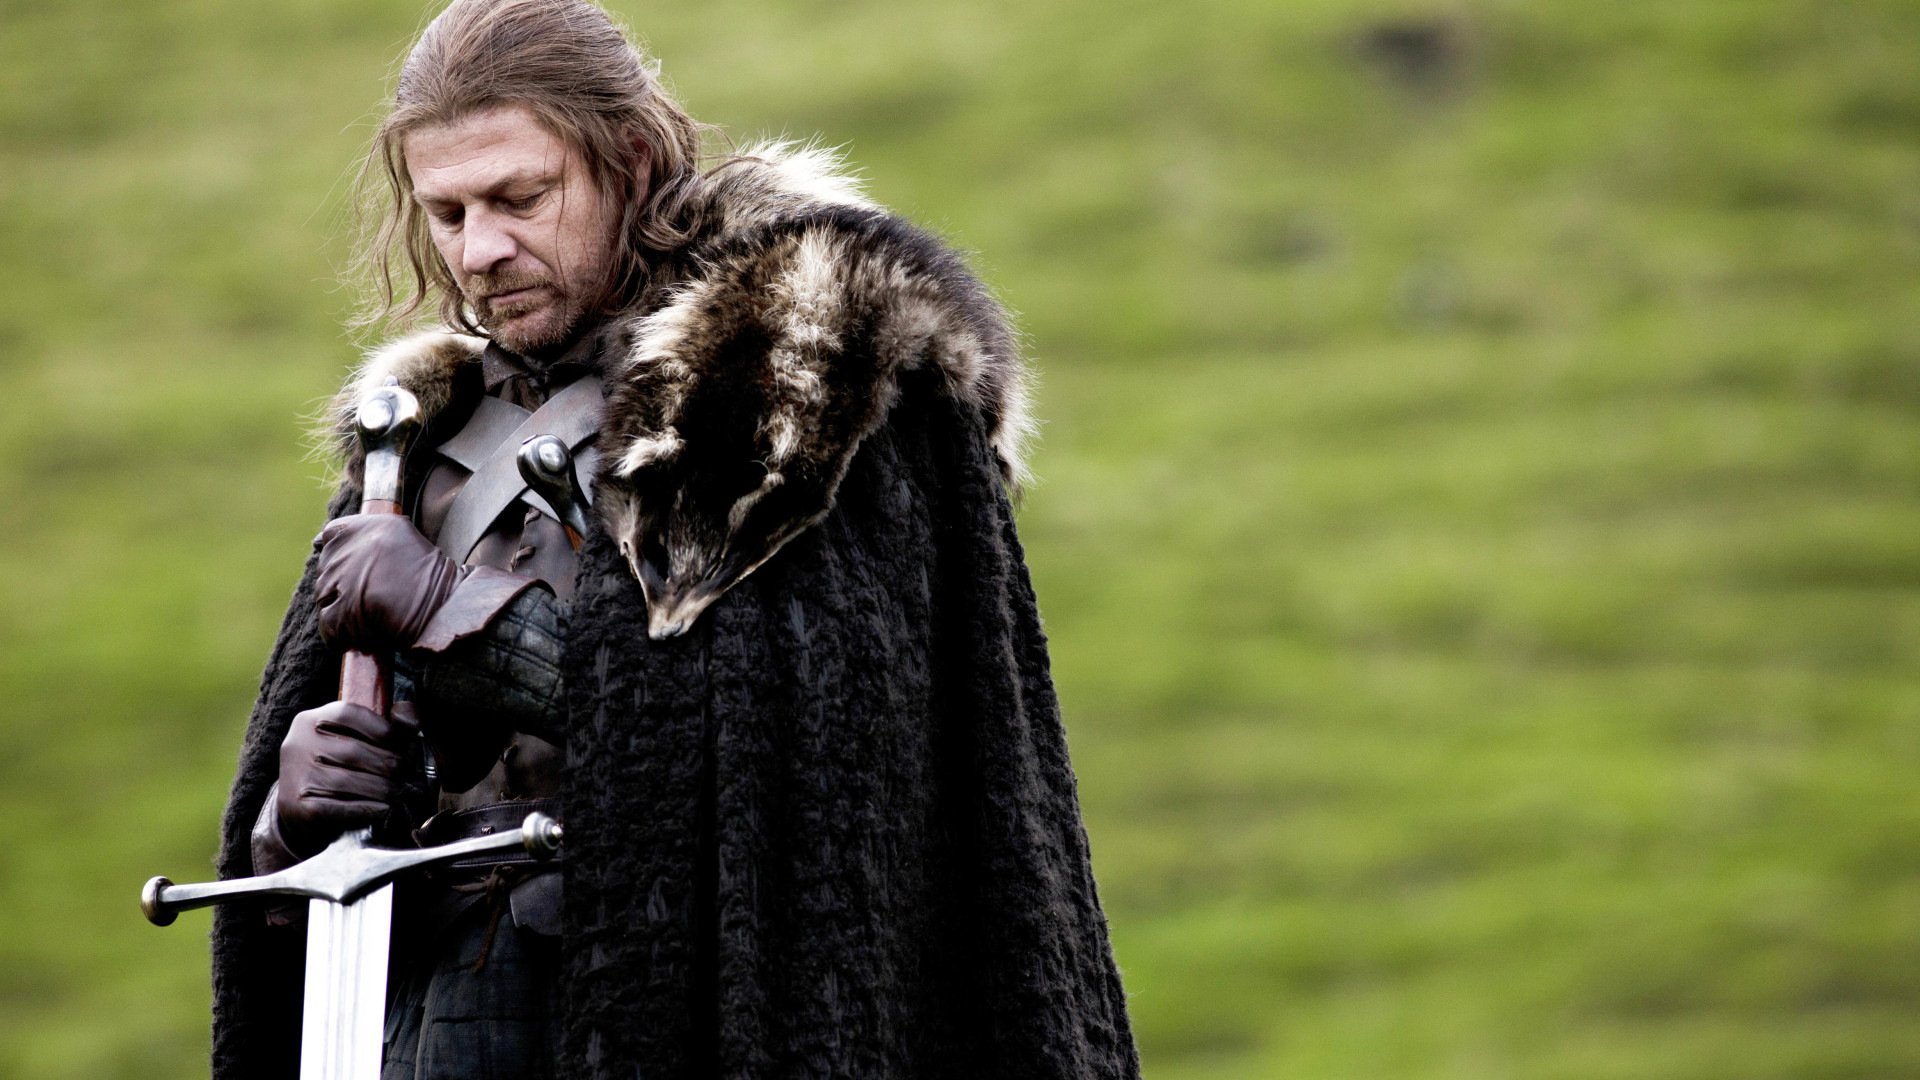 Watch Game of Thrones online - Stream Full Episodes